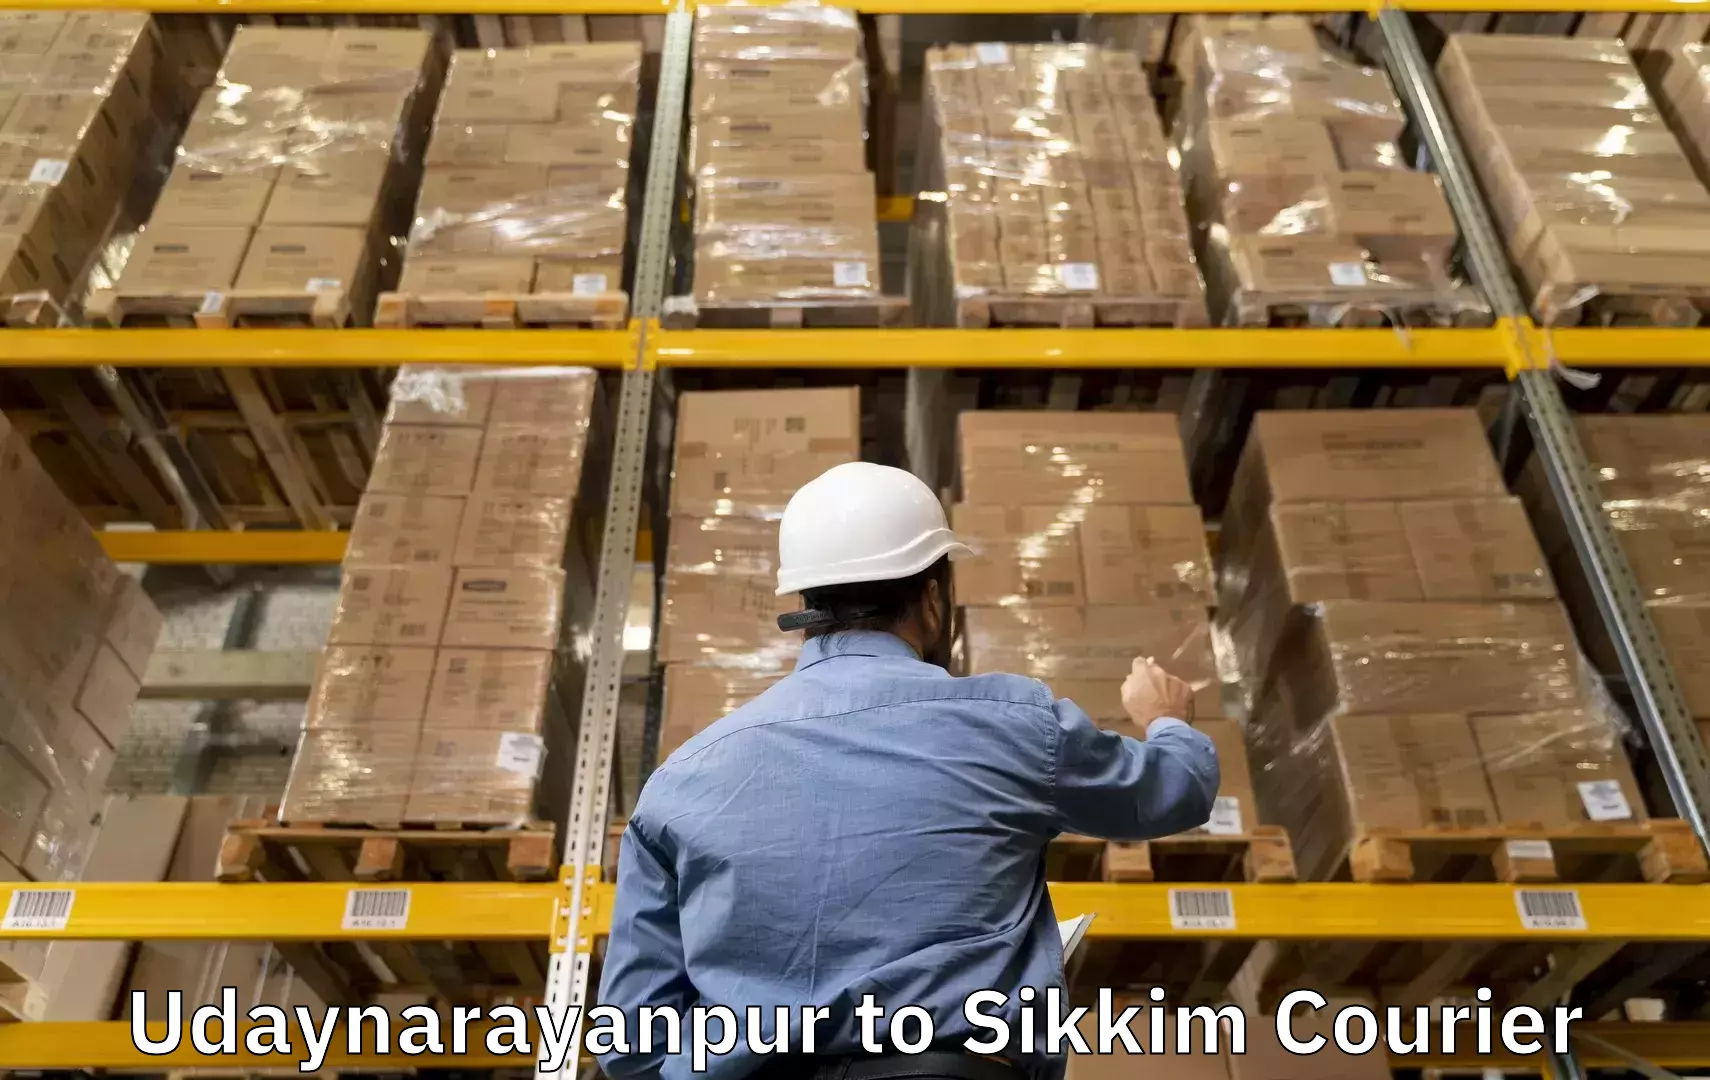 Luggage transfer service Udaynarayanpur to Singtam